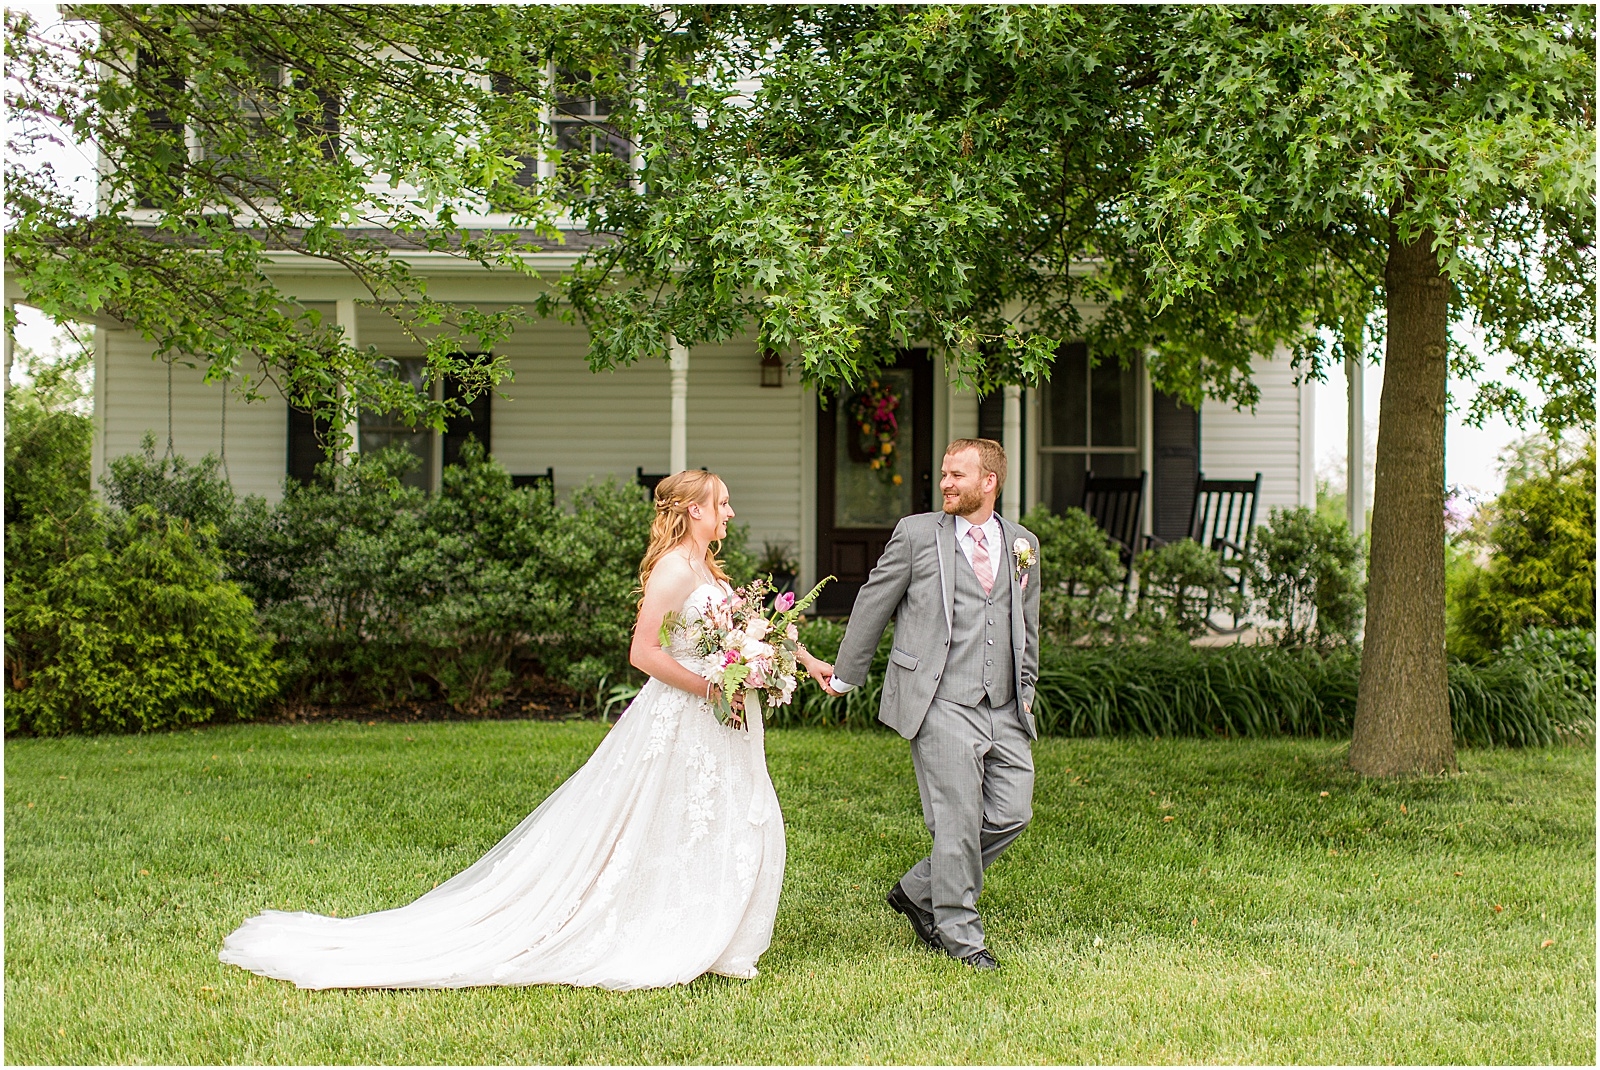 Sierra and Eddie | Wedding BlogBret and Brandie Blog | @bretandbrandie-0082.jpg